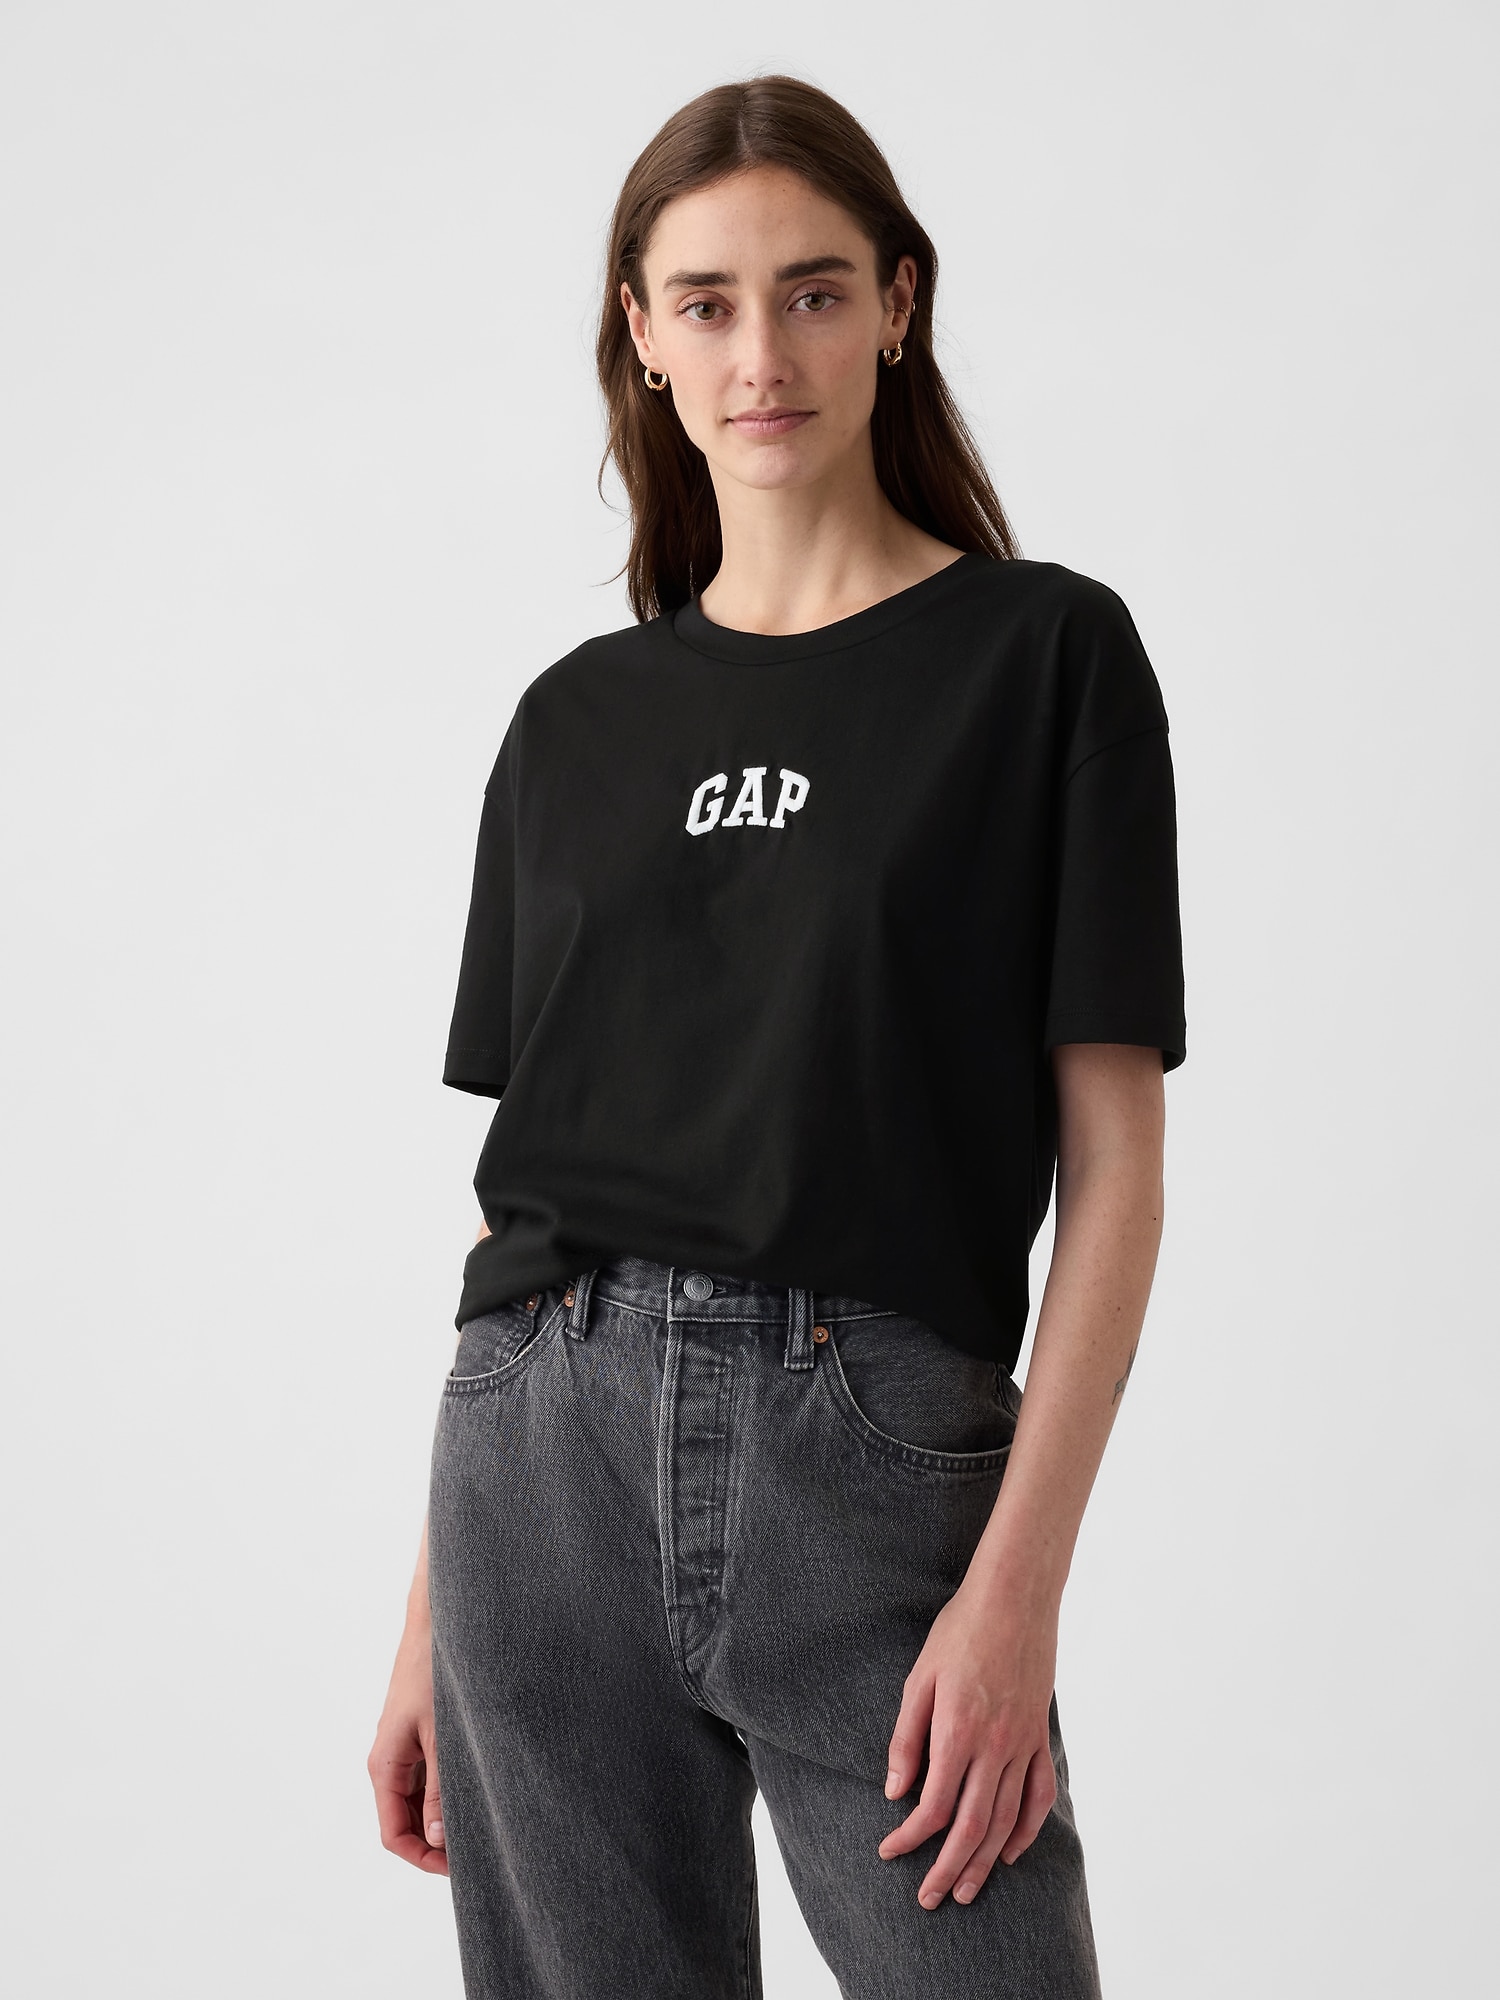 Gapアーチロゴ Tシャツ